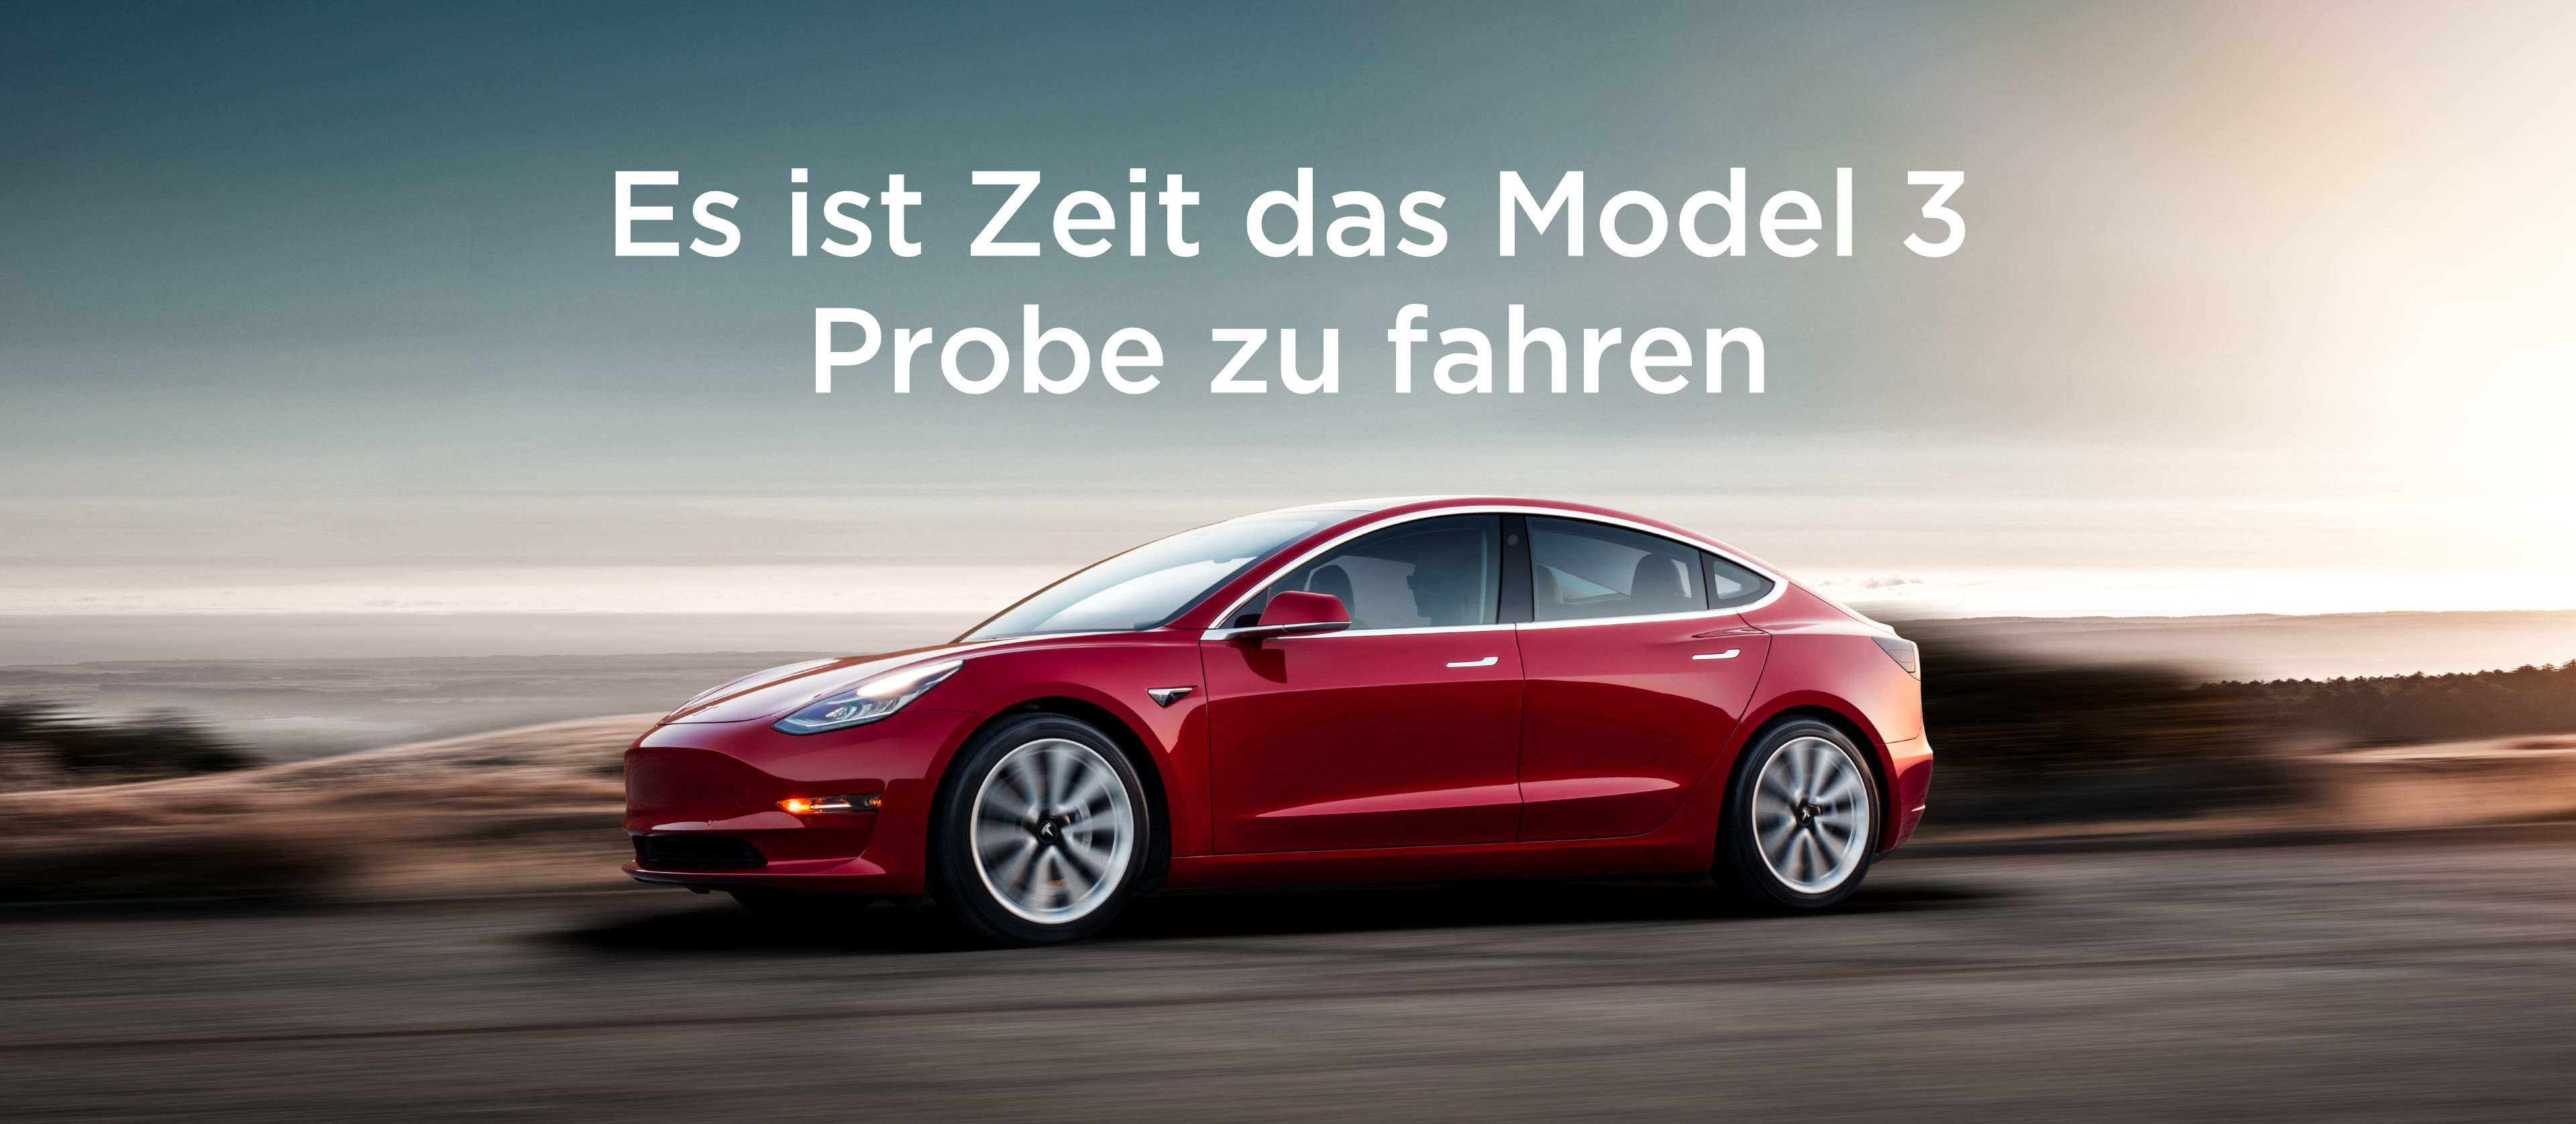 You are currently viewing Tesla lädt Schweizer zu Probefahrten mit dem Model 3 ein